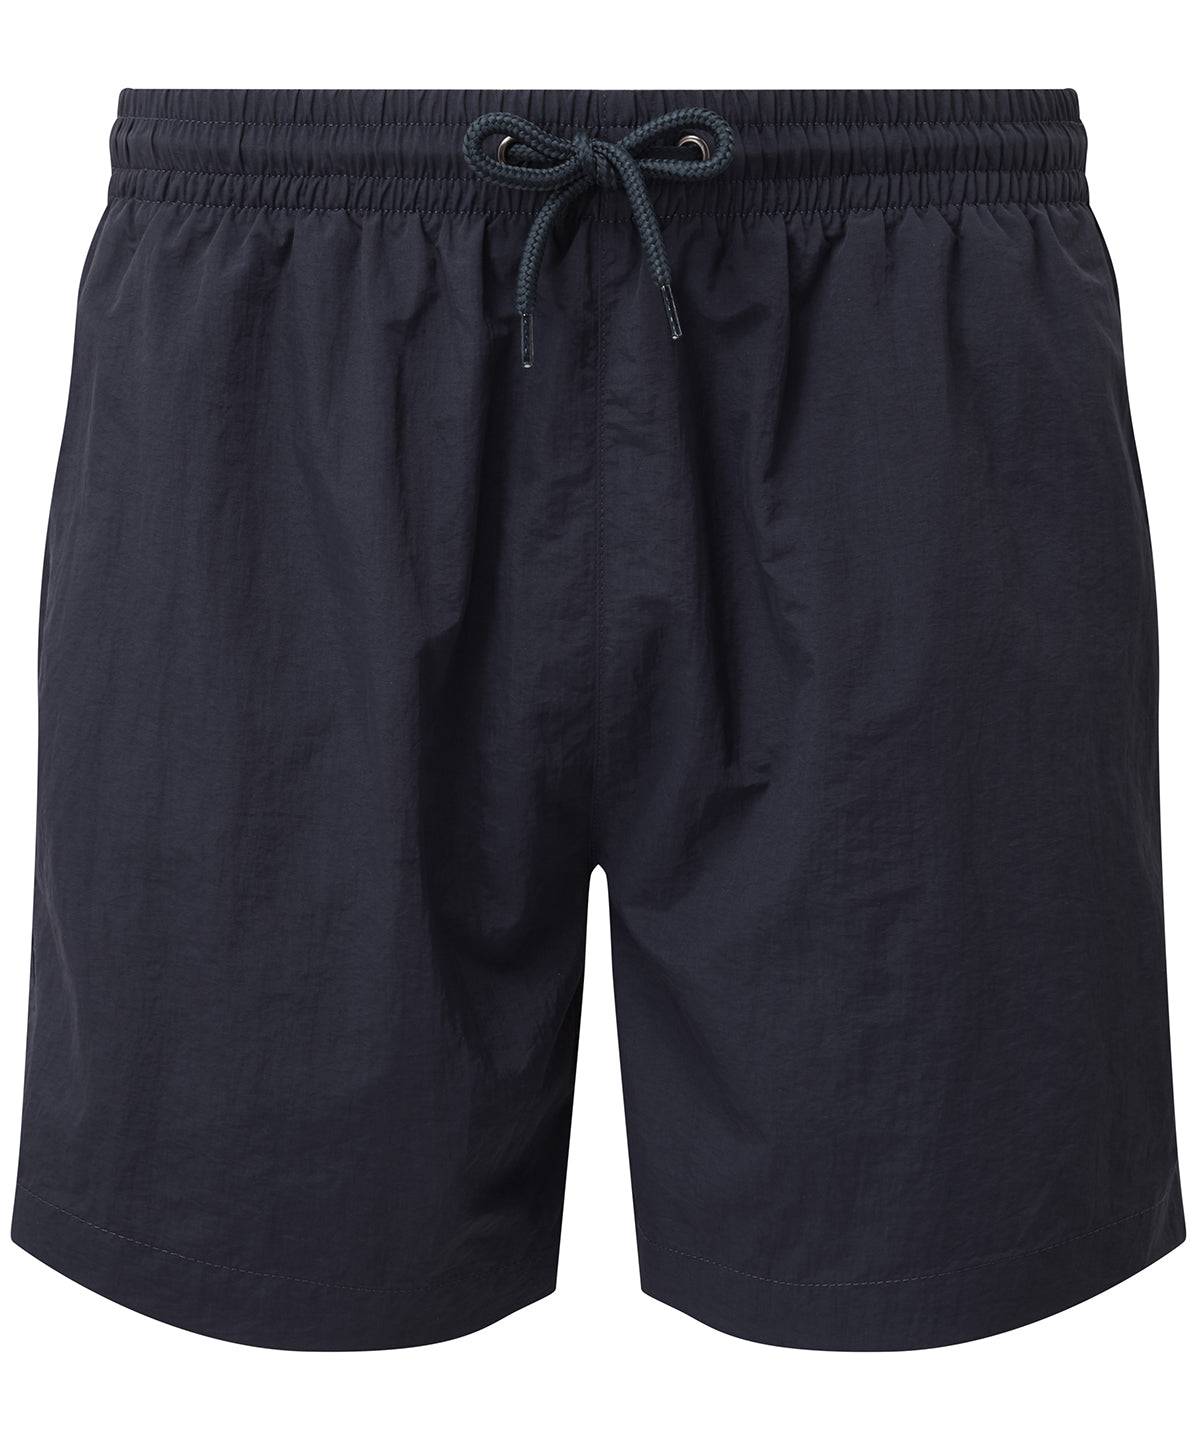 Navy/Navy - Swim shorts